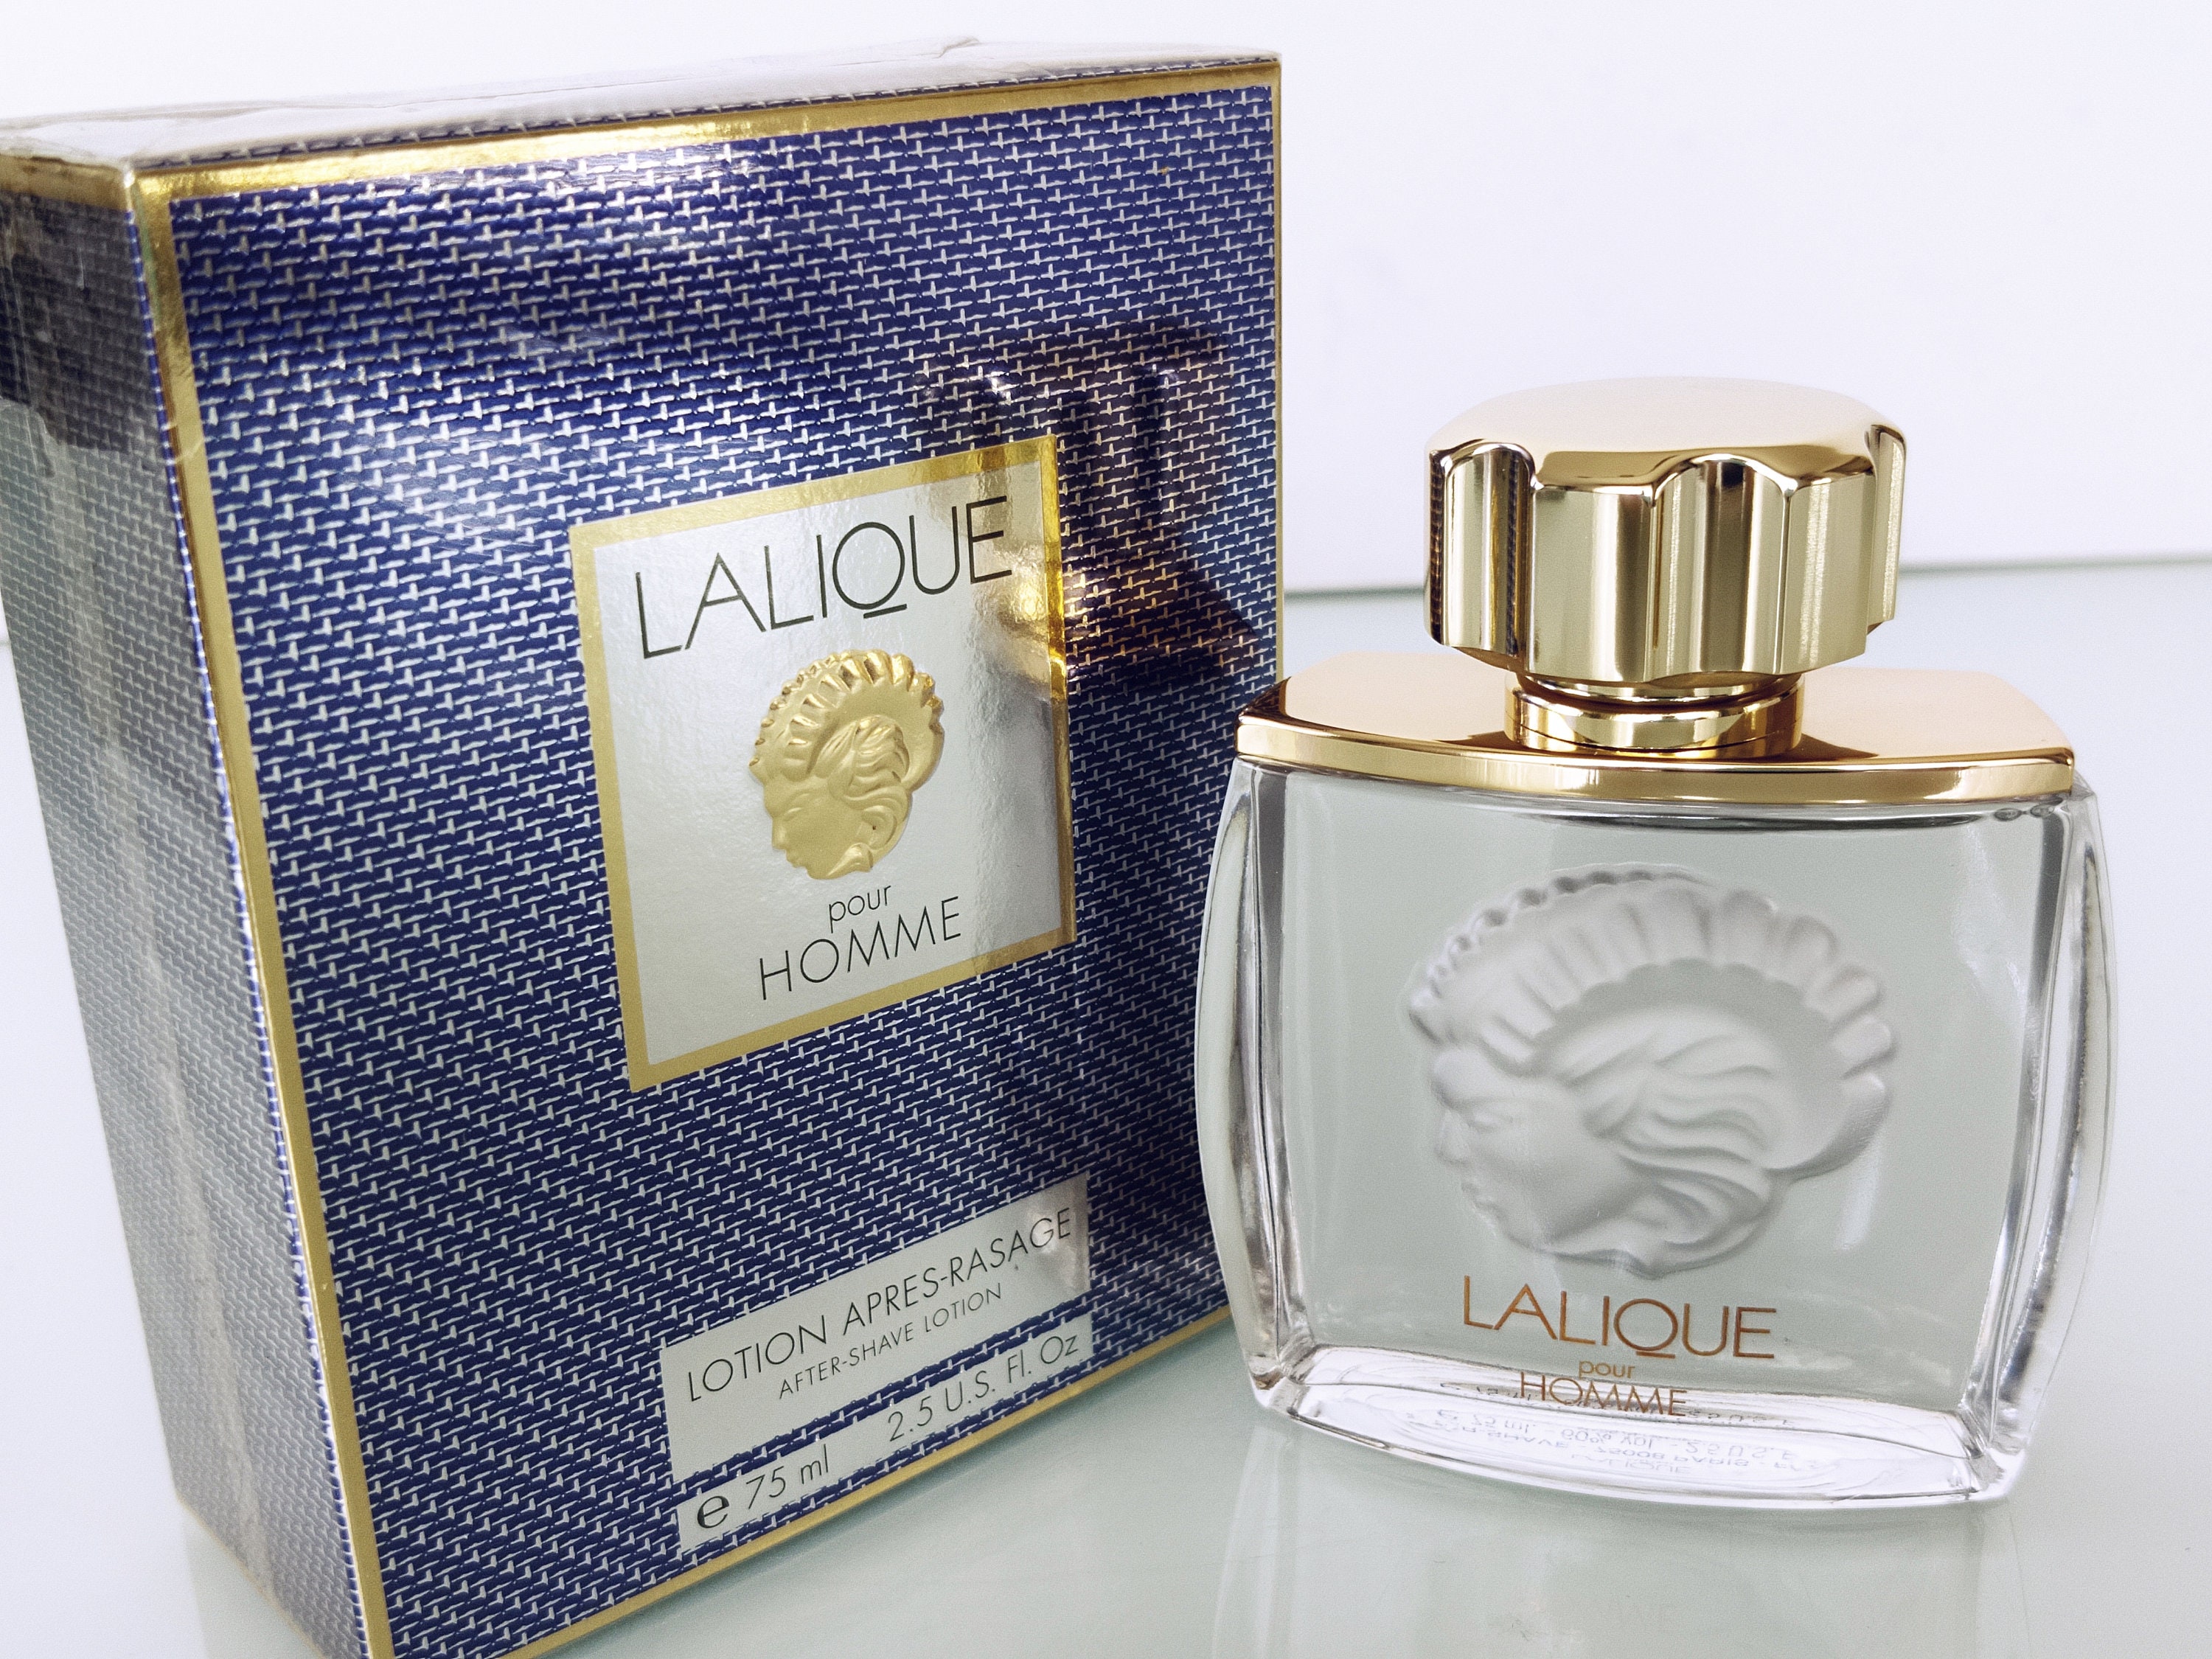 Lalique Après Rasage Le Faune Millésime 2000 Parfum Lalique 75 ml/2,5  fl.oz. Spray naturel - Etsy France